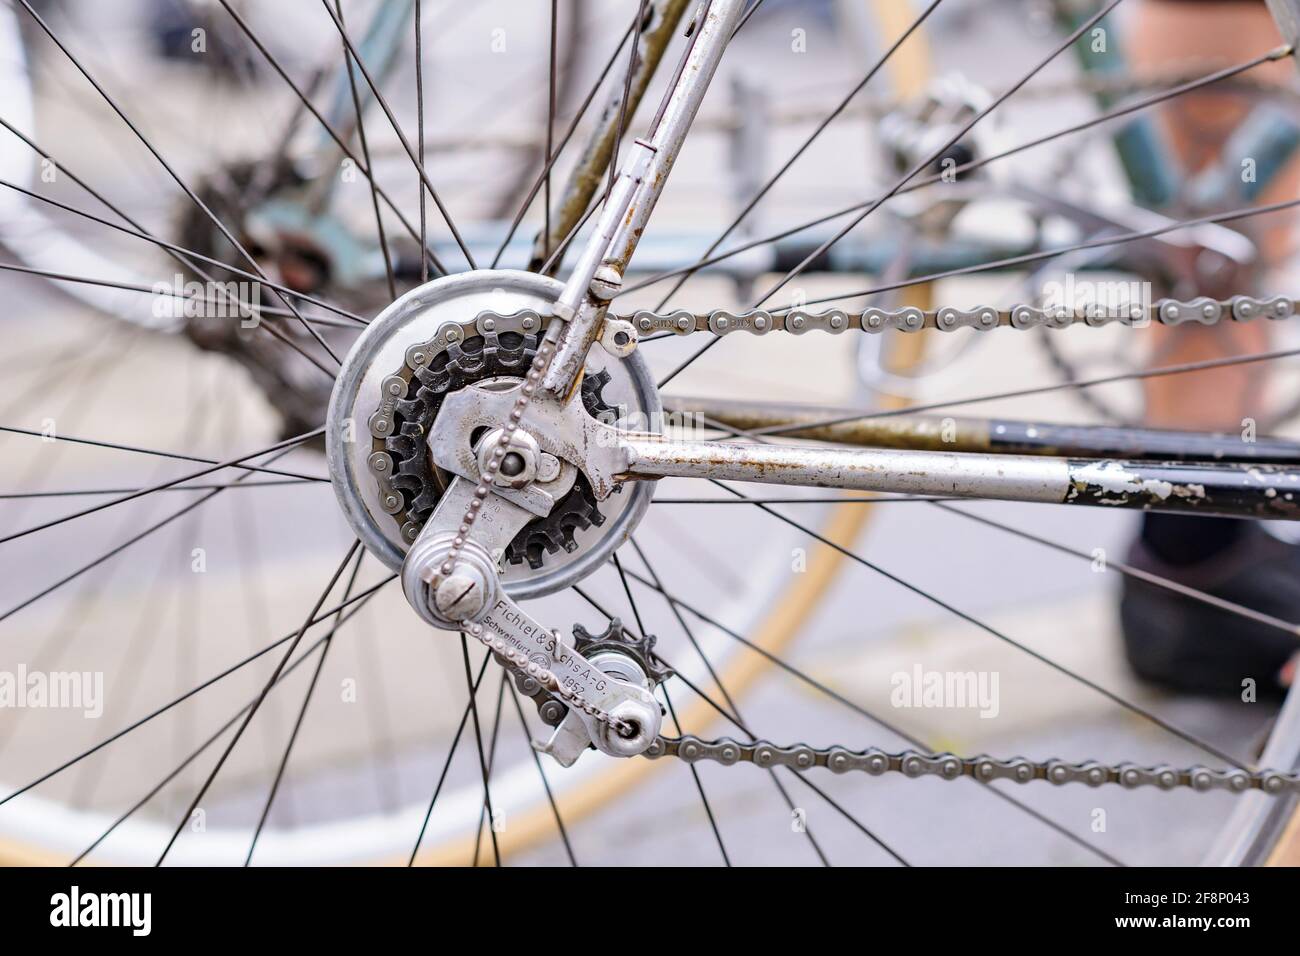 niedersulz, österreich, 12. juni 2016, Klassische Schaltung fichtel und  sachs auf einem alten Rennrad beim Oldtimer-Radevent in velo veritas  Stockfotografie - Alamy